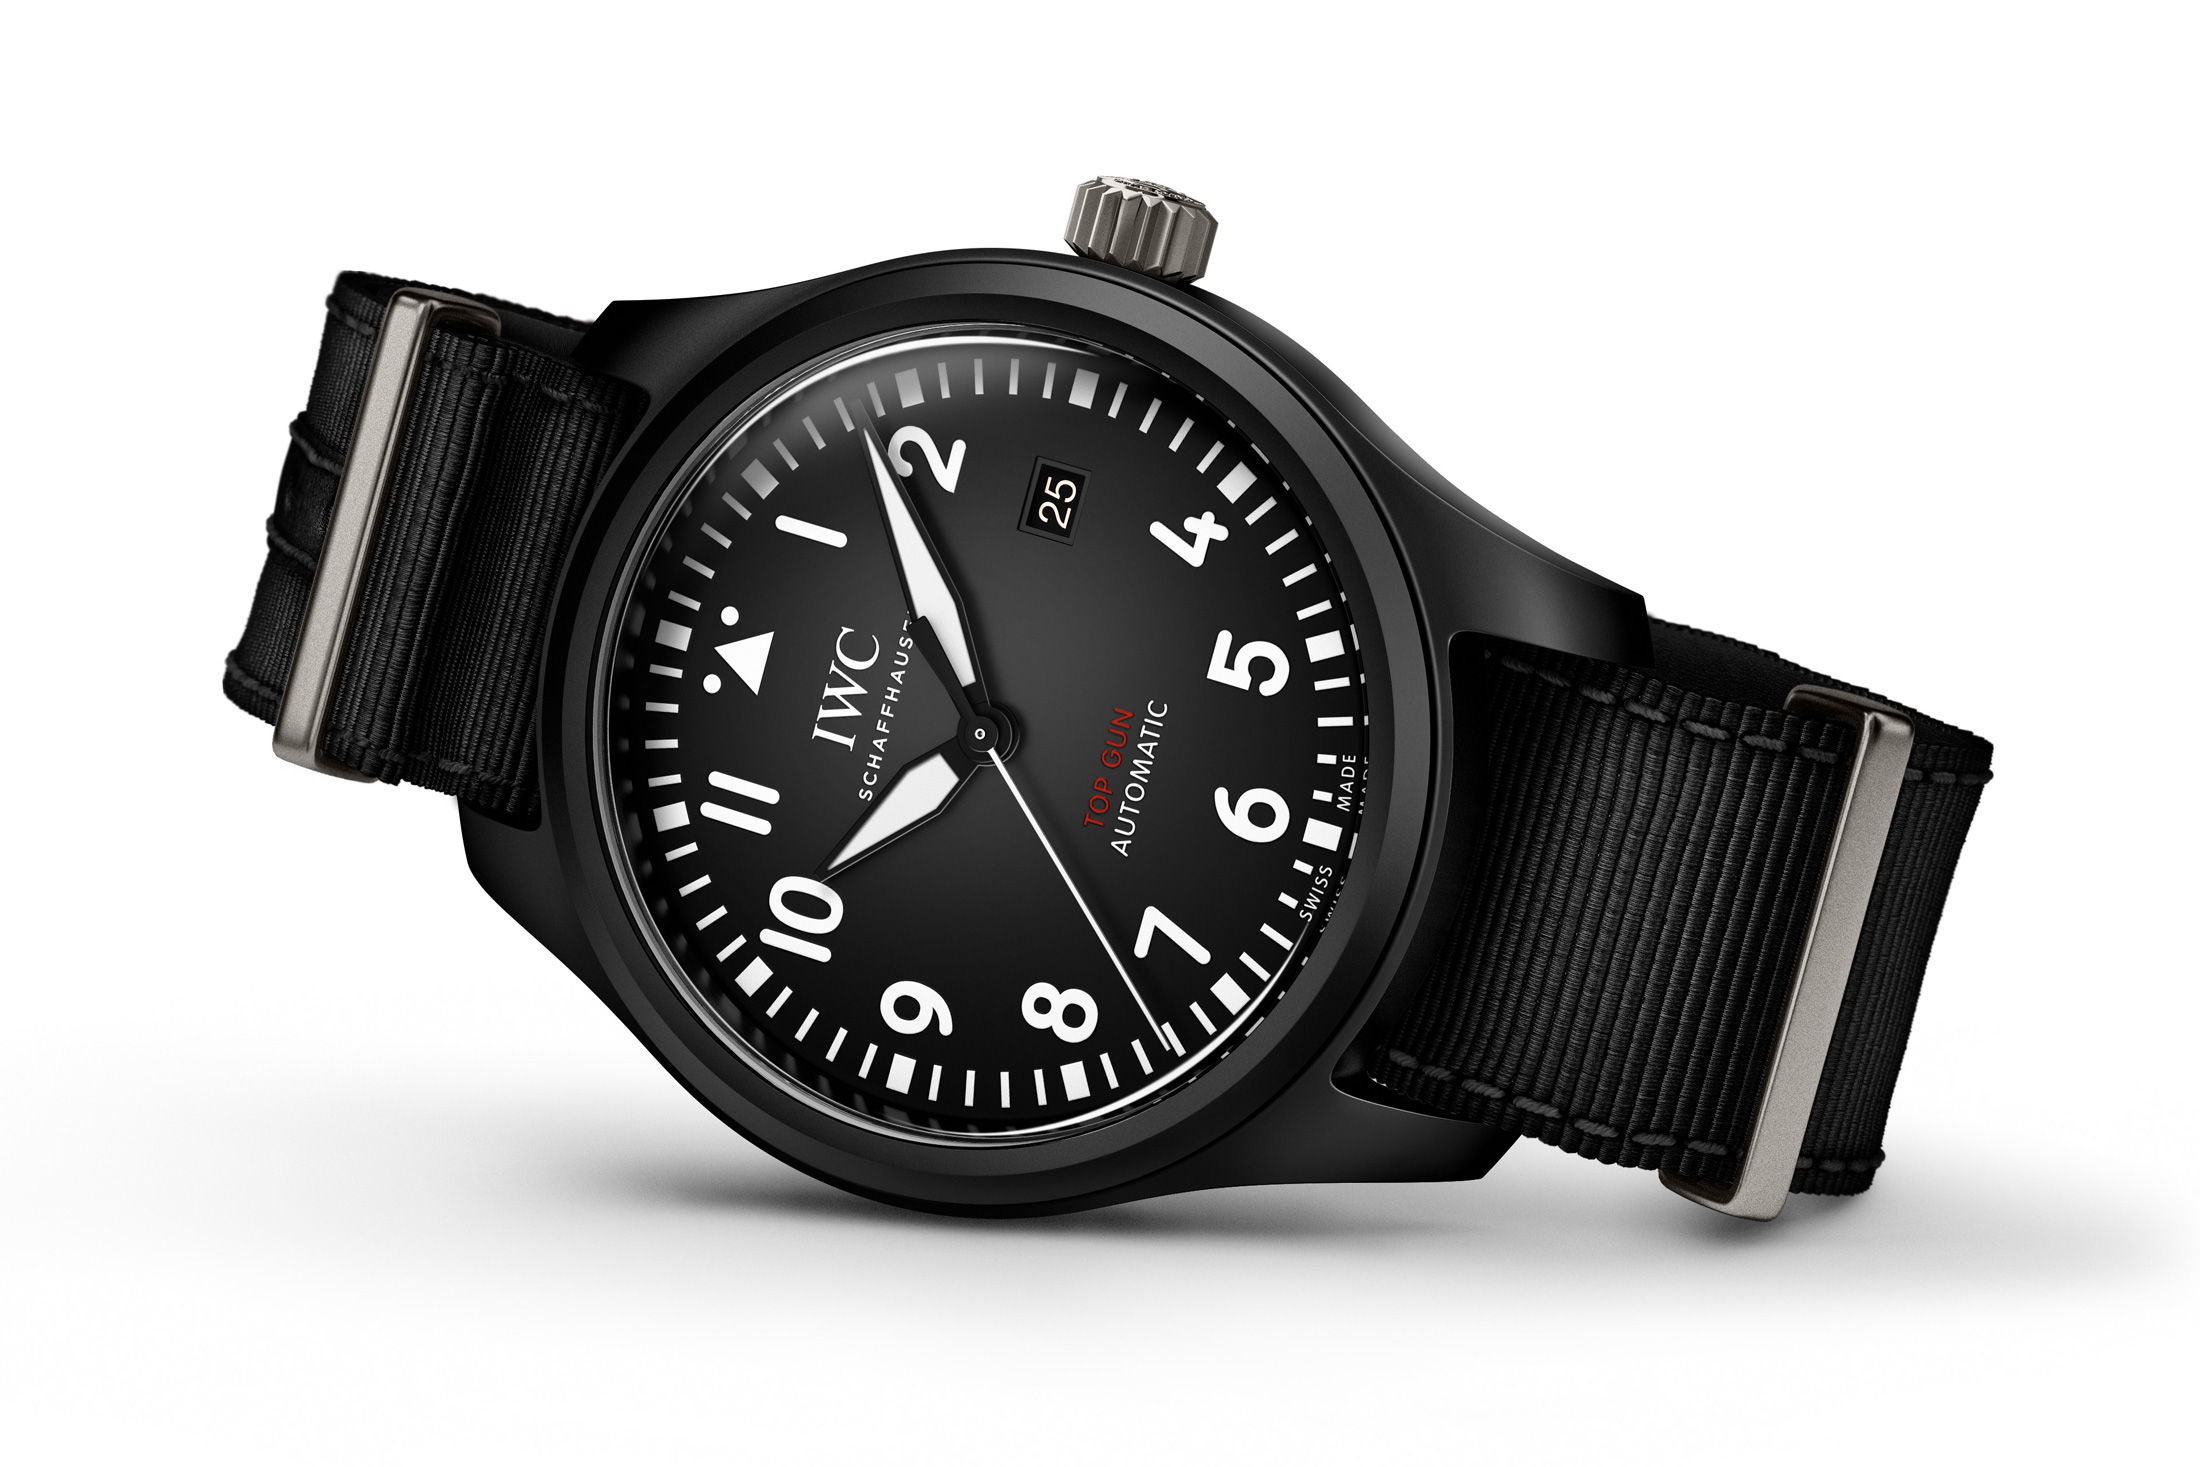 Pilot's watch